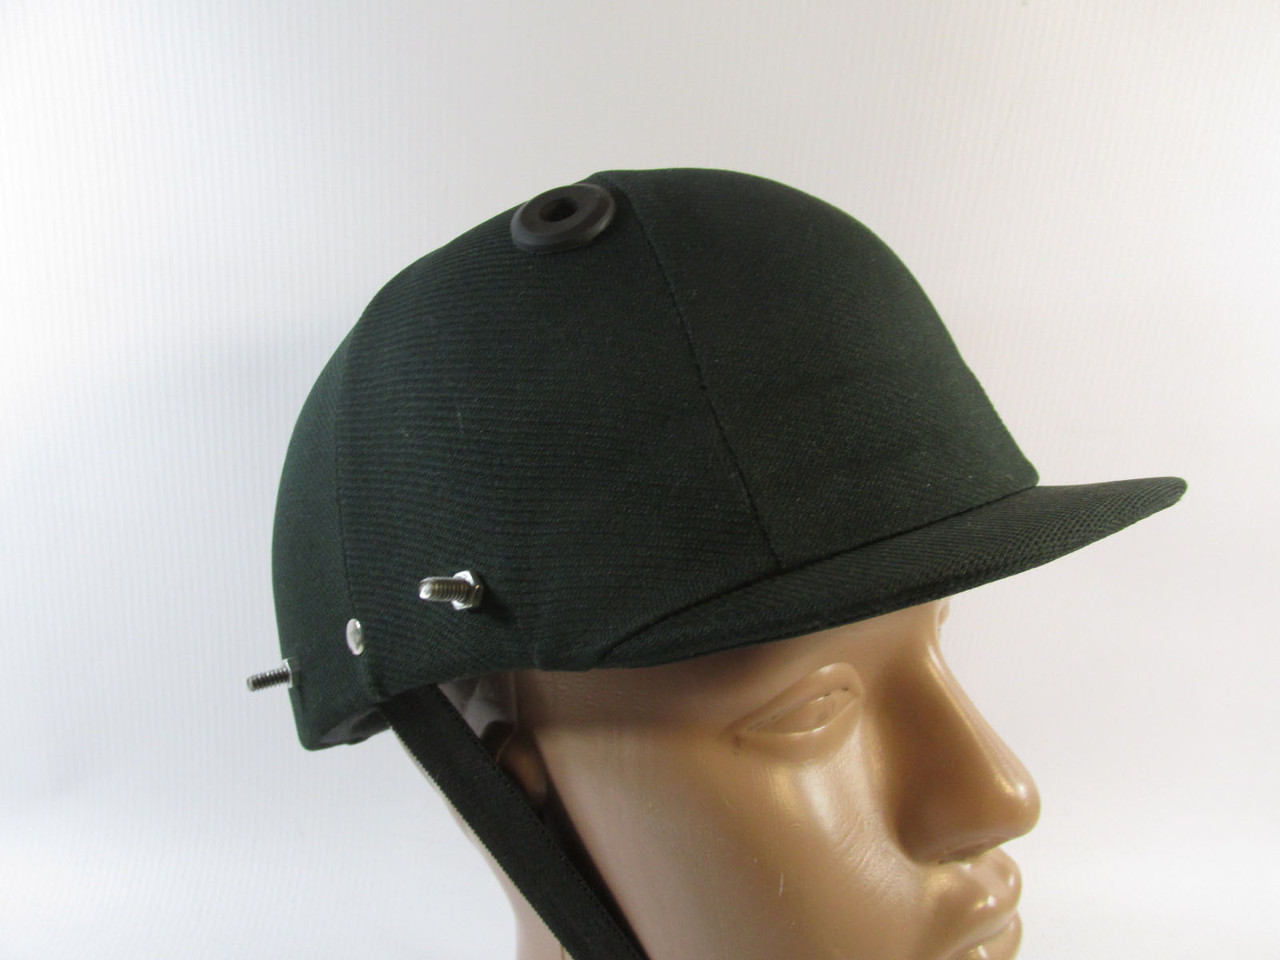 Шлем защитный MD, зеленый, 54 см, болтами для креплениями, Хор сост!